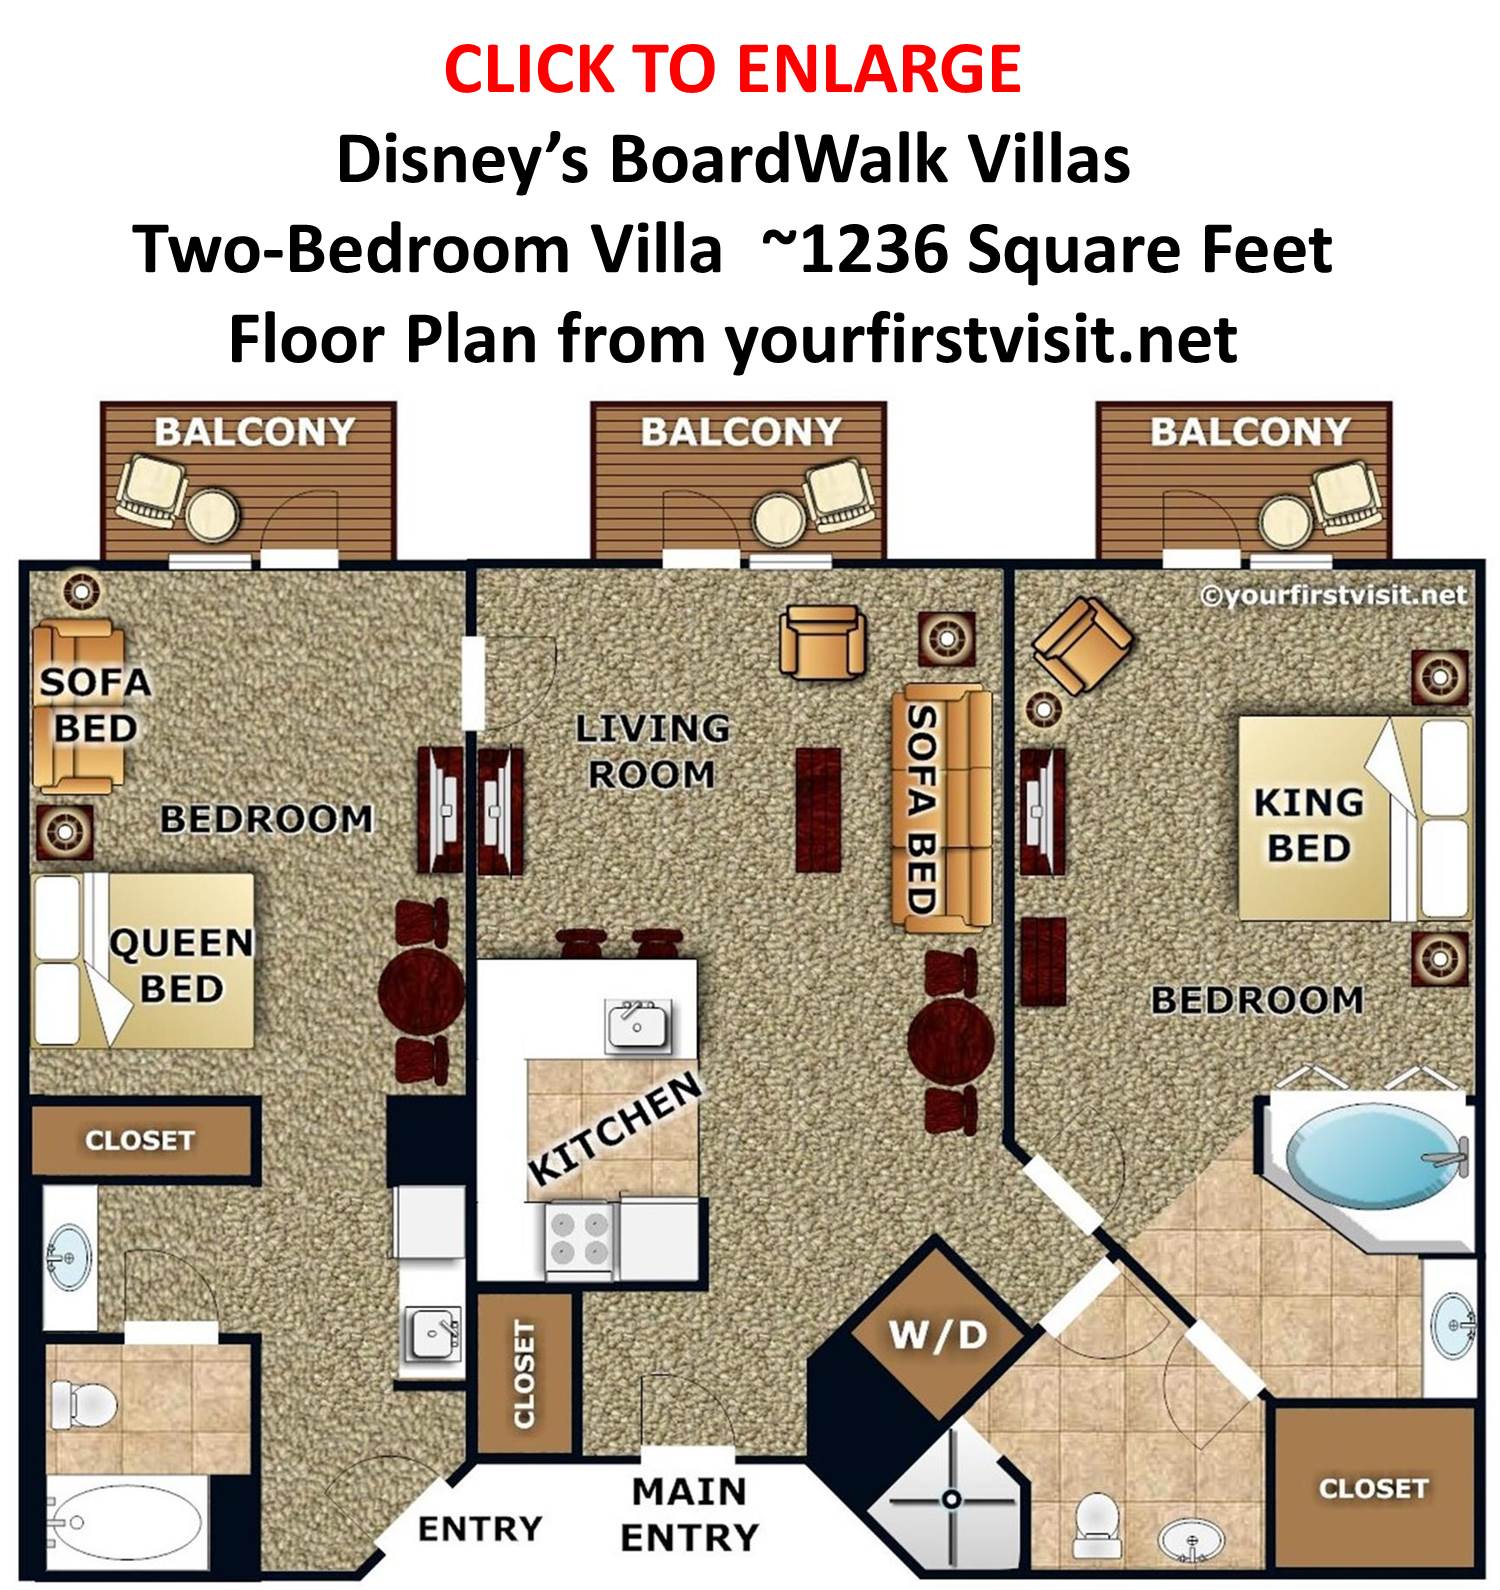 Disneys-BoardWalk-Villas-Two-Bedroom-Villa-Floor-Plan-from-yourfirstvisit.net_.jpg